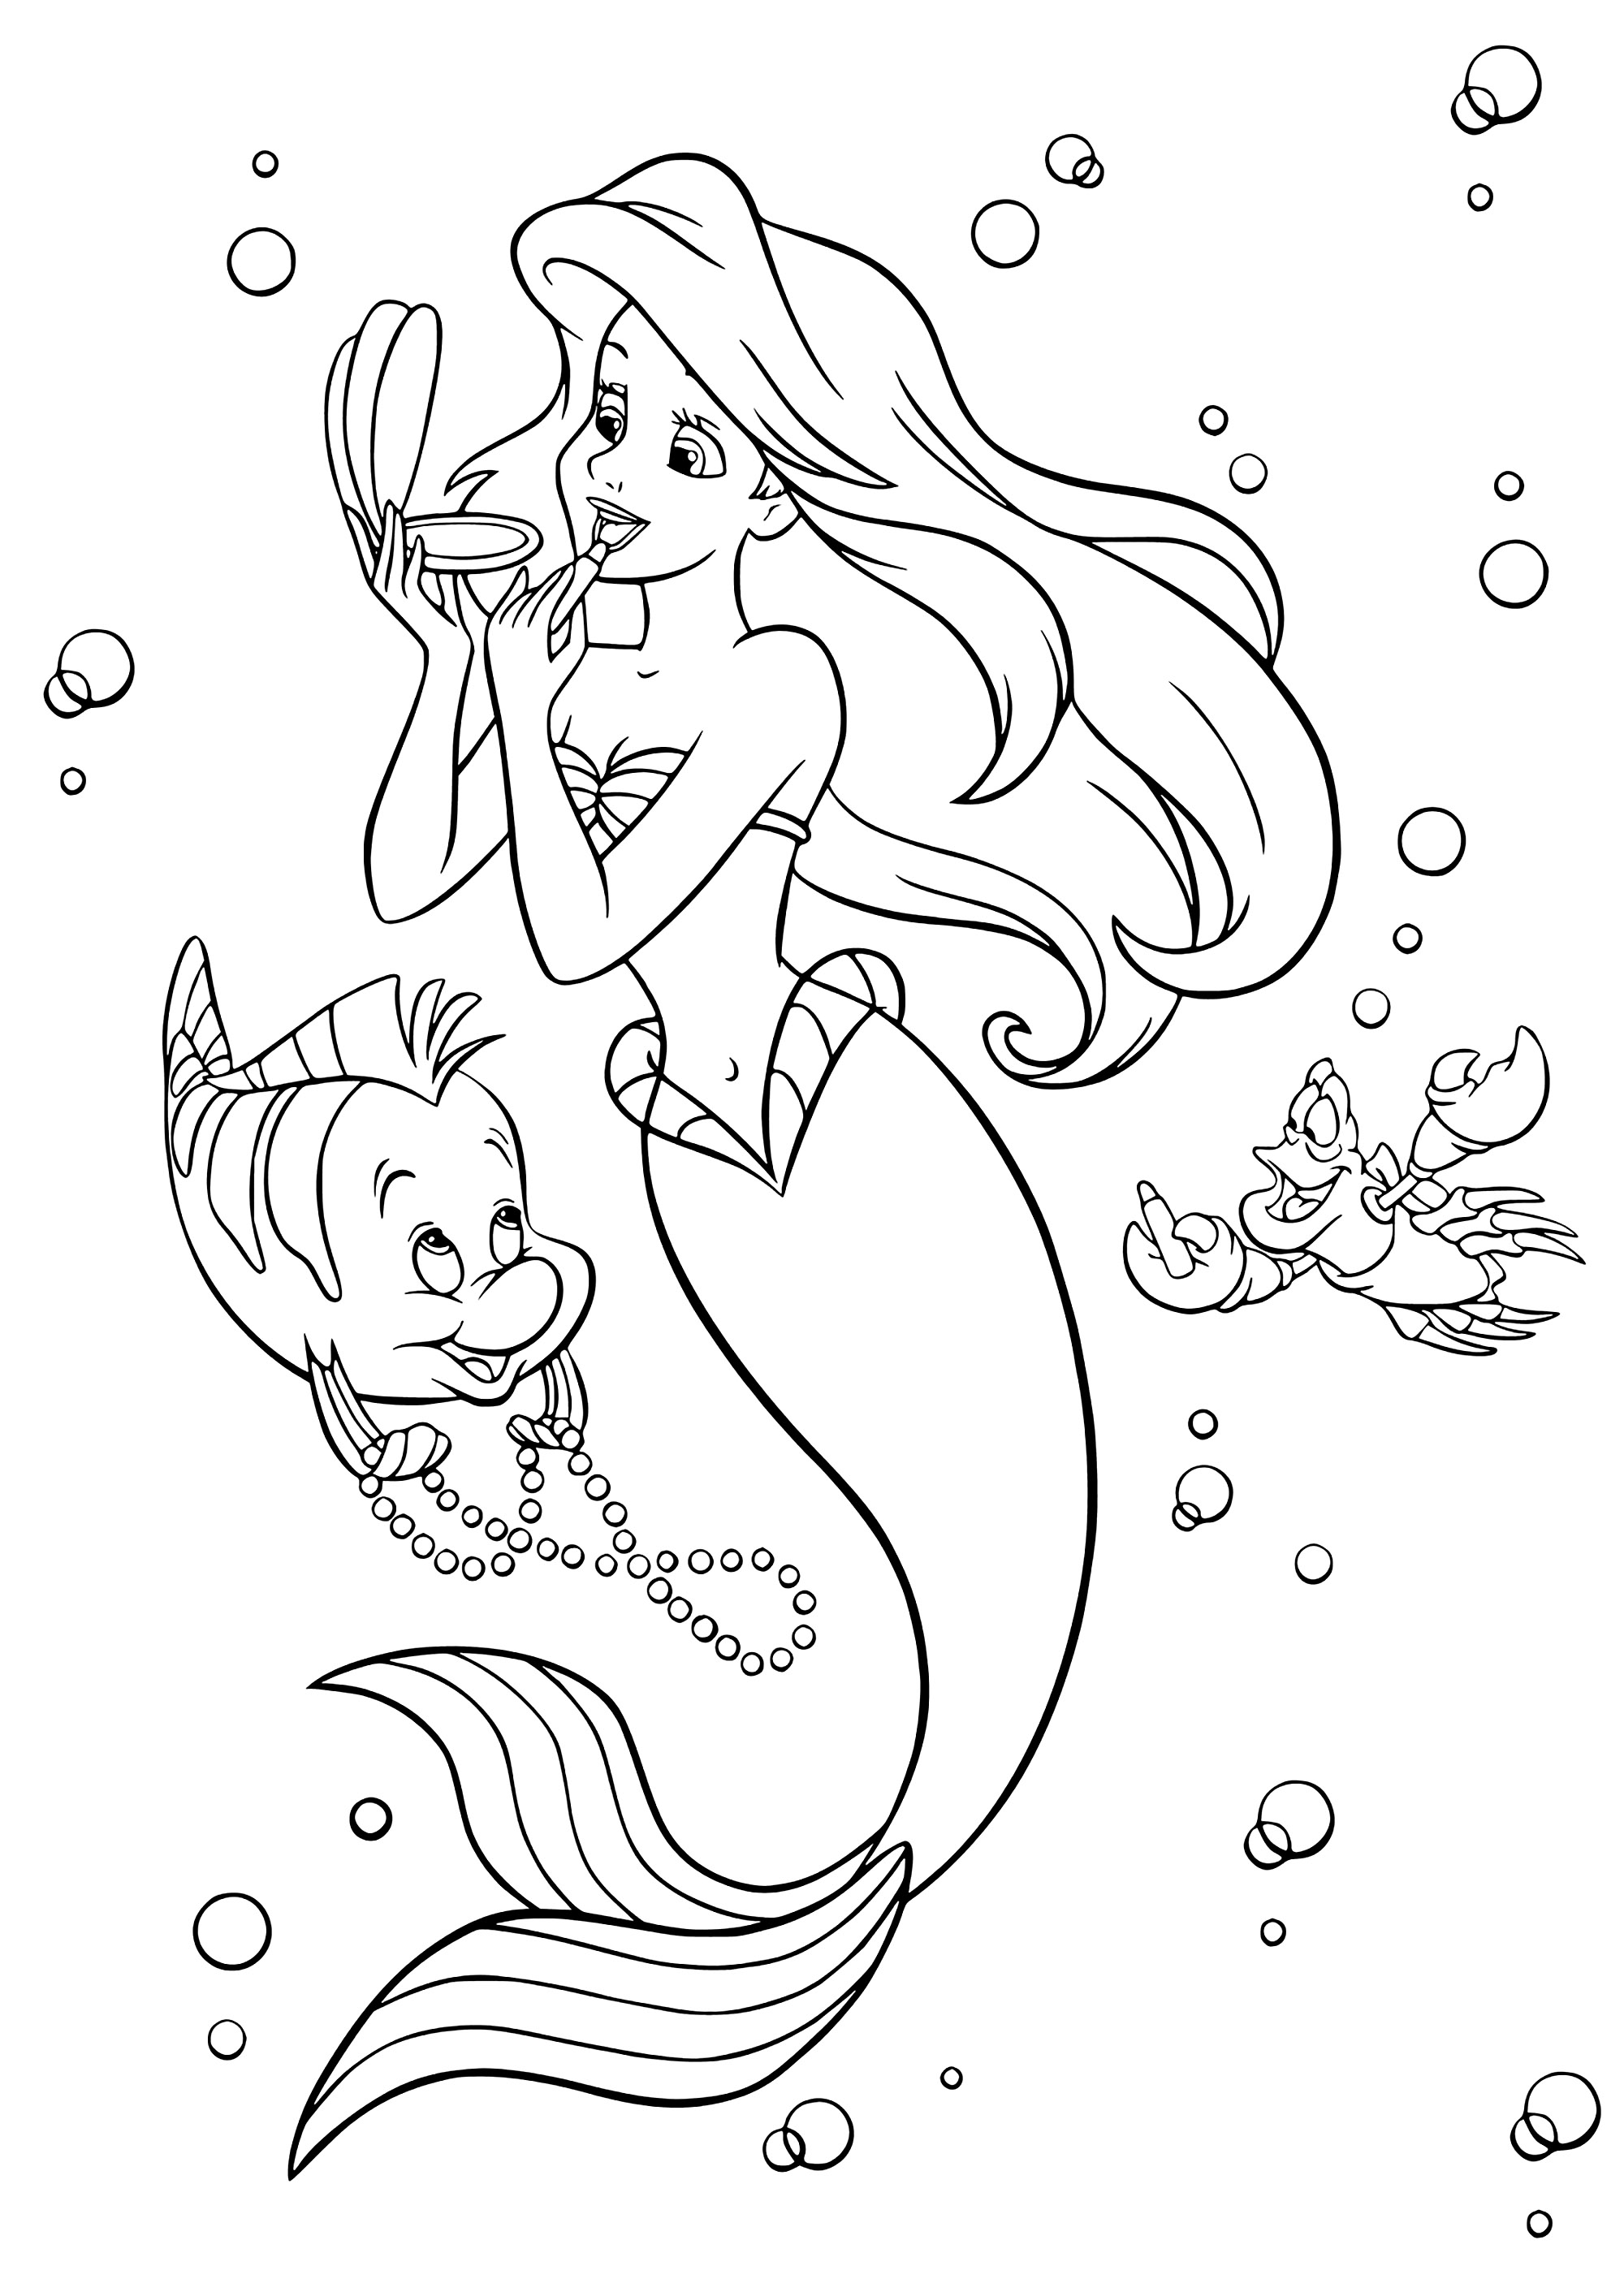 Ariel avec ses amis, se maquillant pour Éric. Coloriez Ariel, ainsi que Polochon le poisson et Sébastien le homard